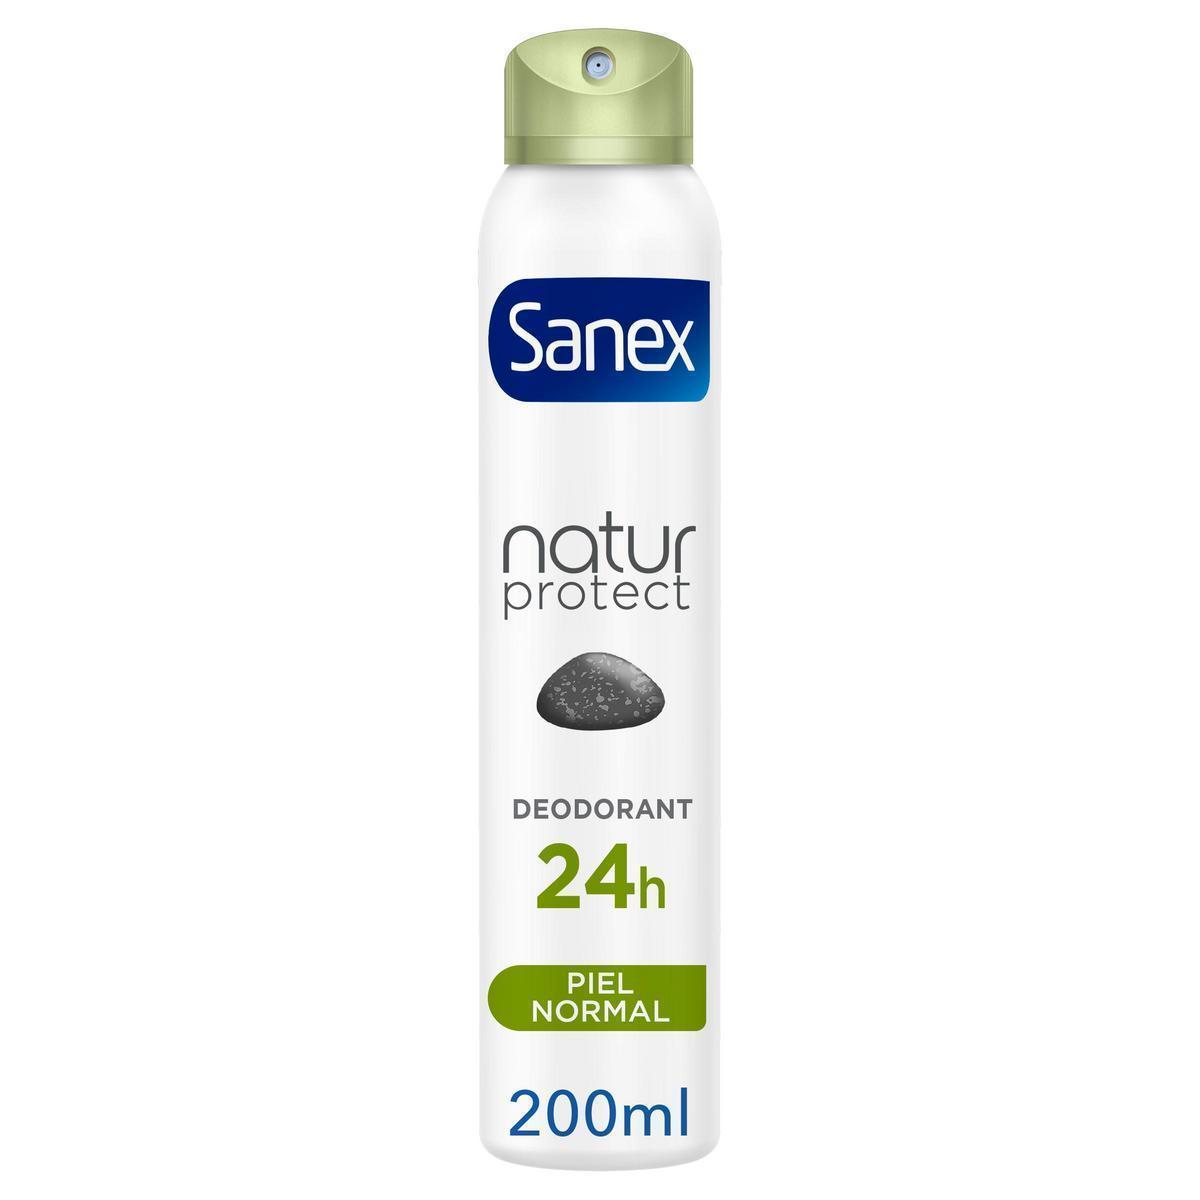 Sanex - Desodorante spray Sanex Natur Protect piel normal 24h con piedra de alumbre 200ml